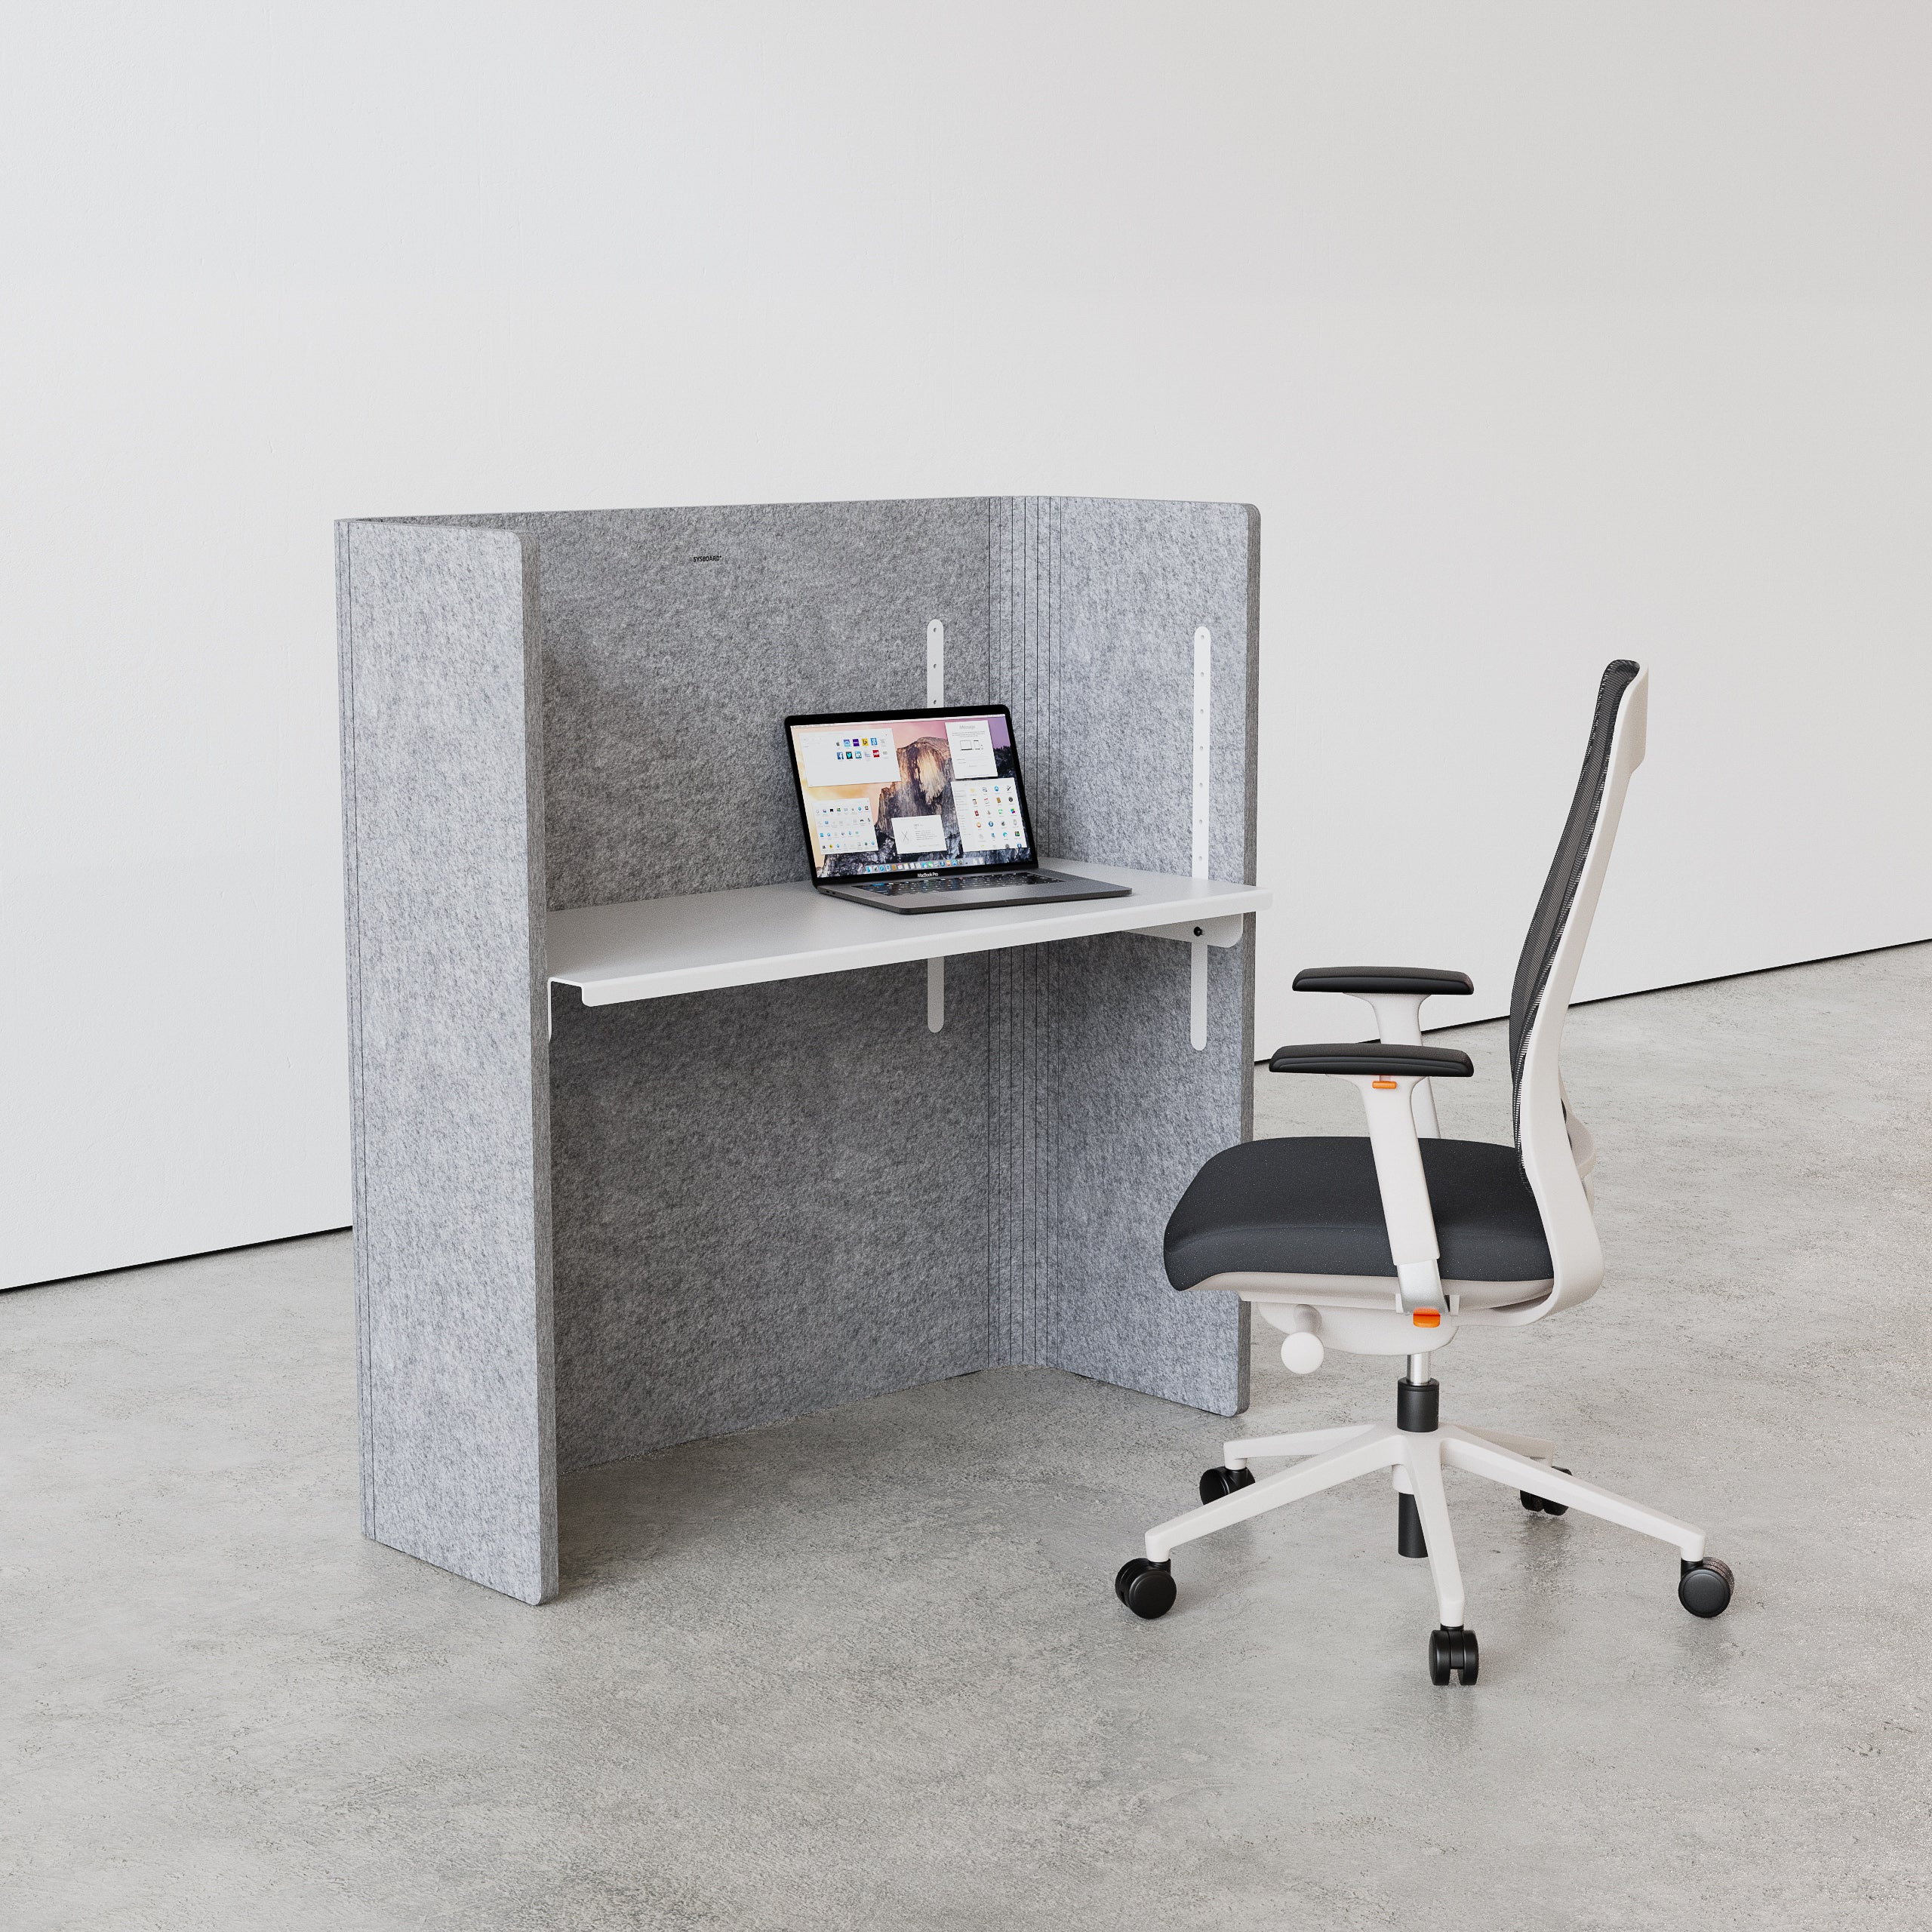 FLEX DESK normal grau, ist ein akustisch hoch wirksamer Schreibtisch innerhalb des FLEX akustik Familie. In verschiedenen farben erhältlich, biegsam, ökologisch, recycelt, höhenverstellbar, Ergonomie, Home Office, SYSBOARD